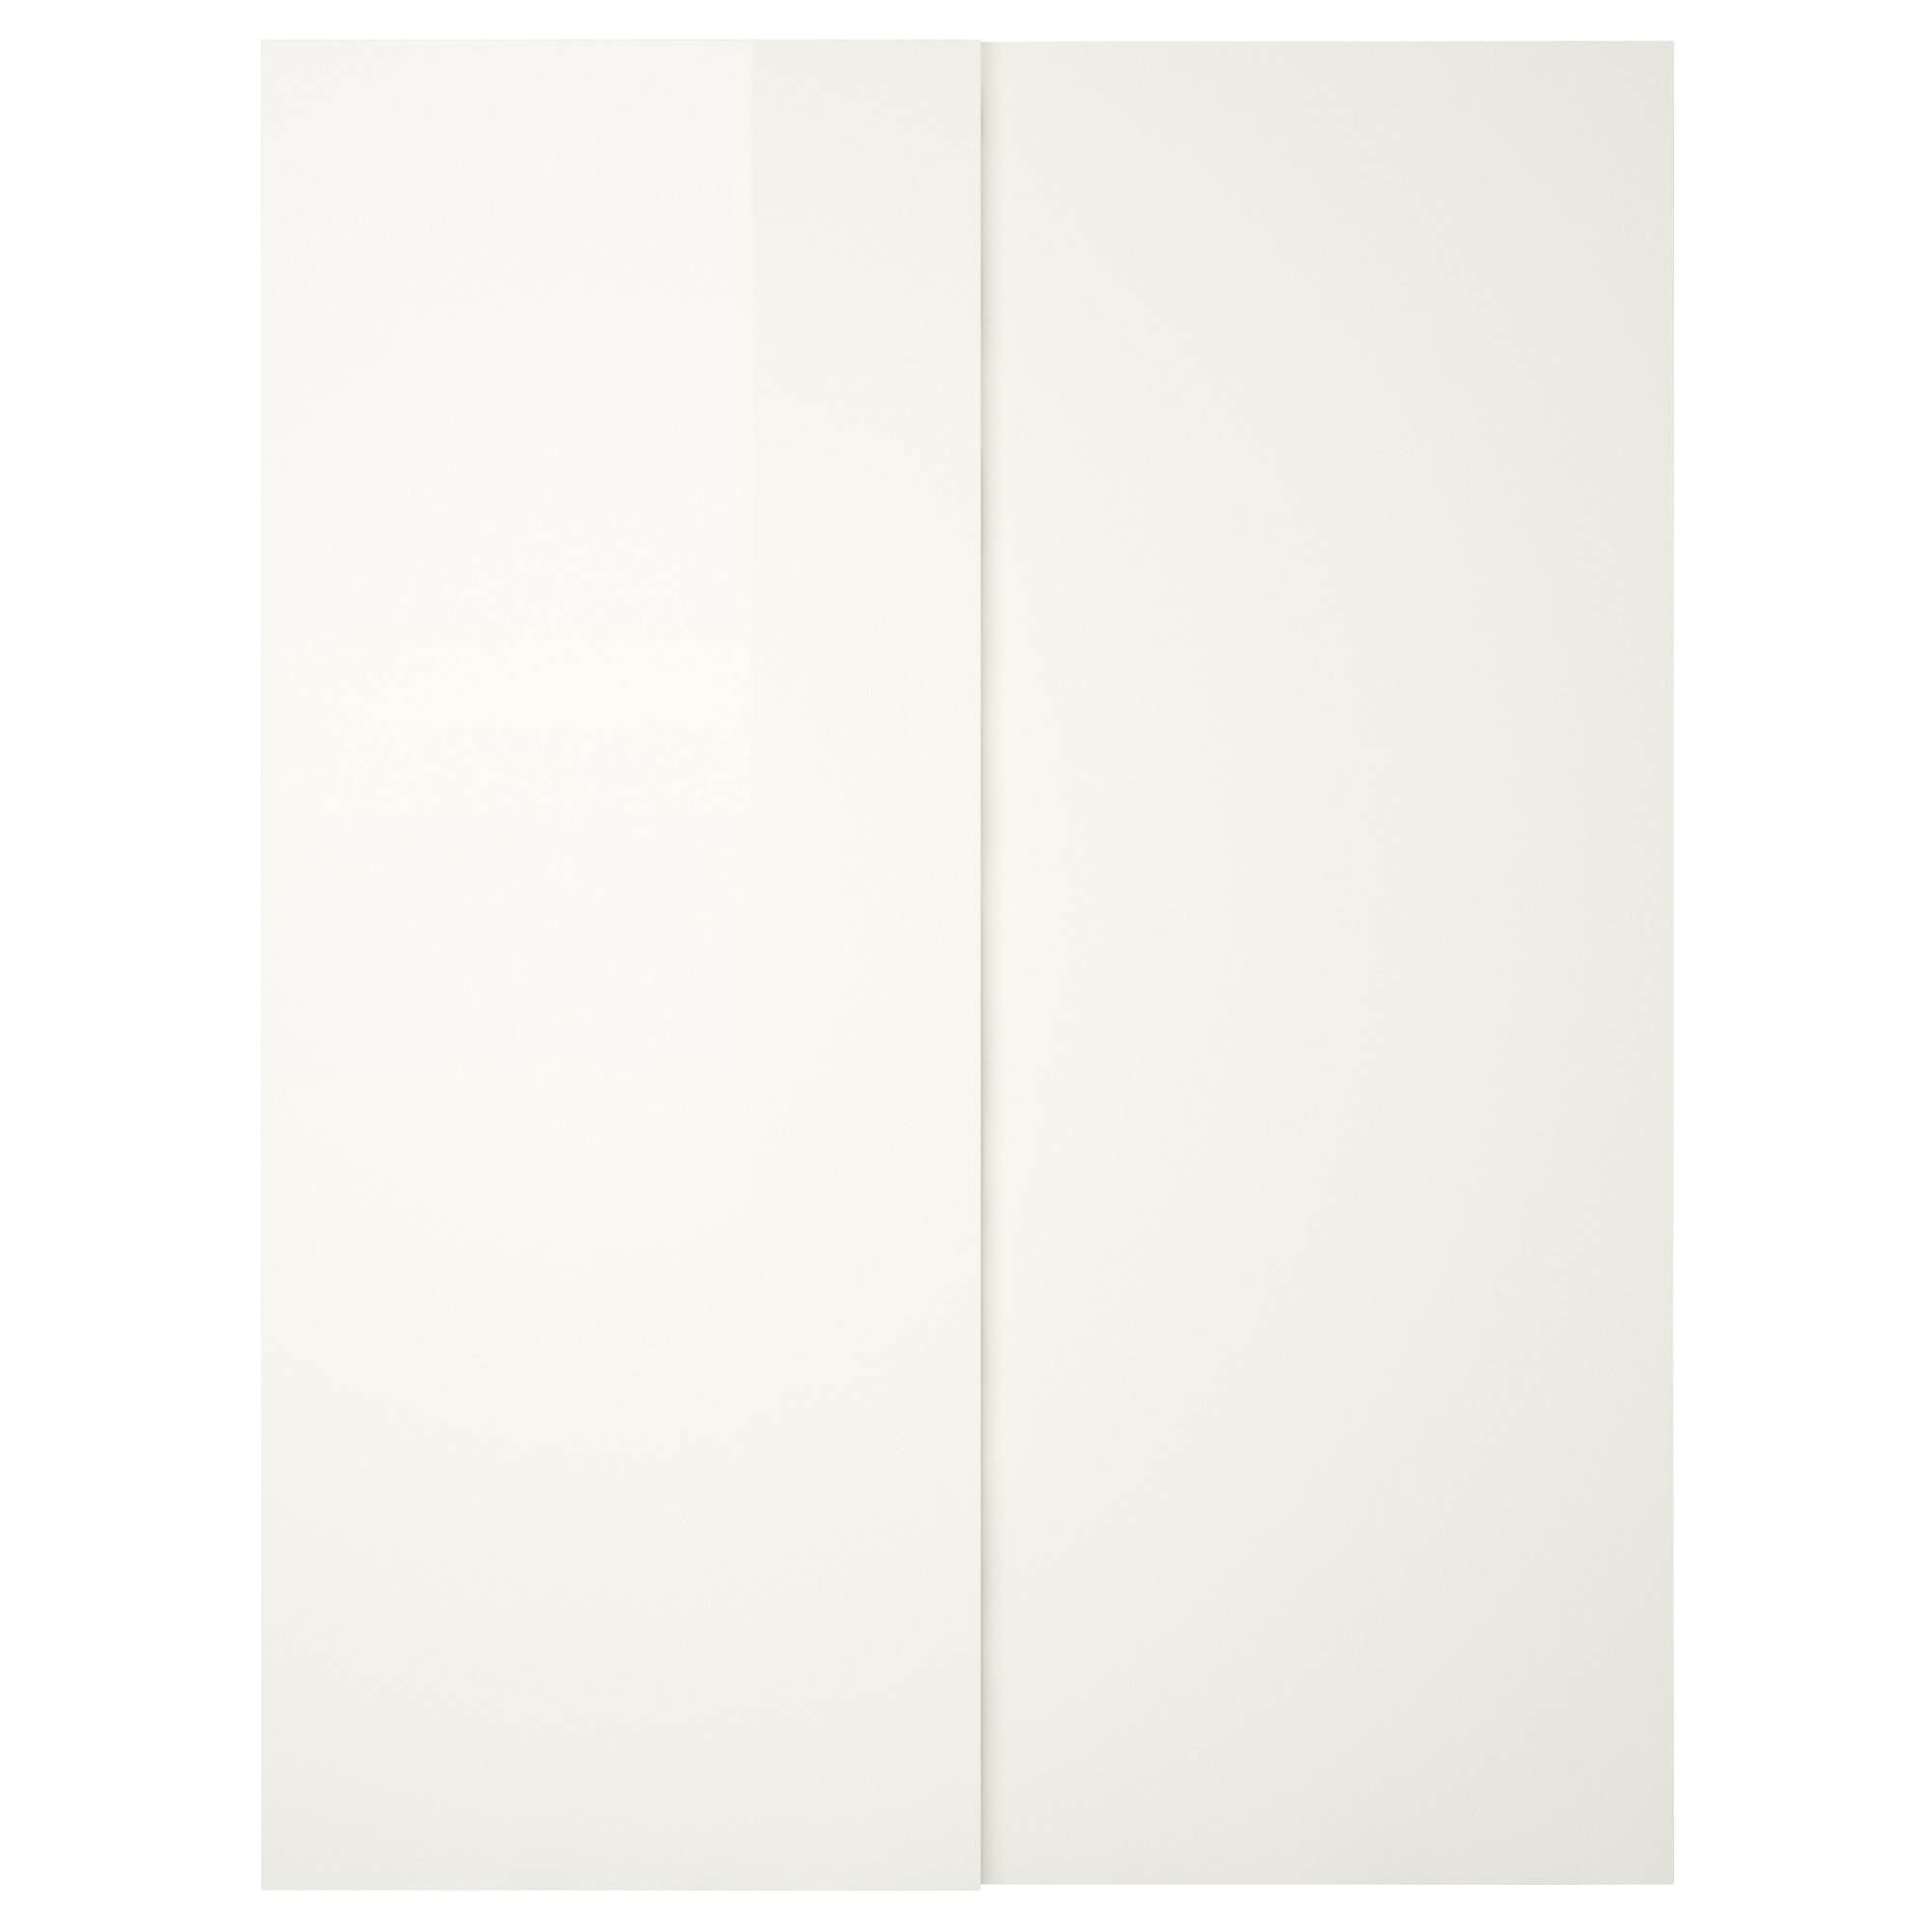 Hasvik Pair Of Sliding Doors High Gloss/white 150x201 Cm – Ikea Within White High Gloss Sliding Wardrobes (Photo 8 of 15)